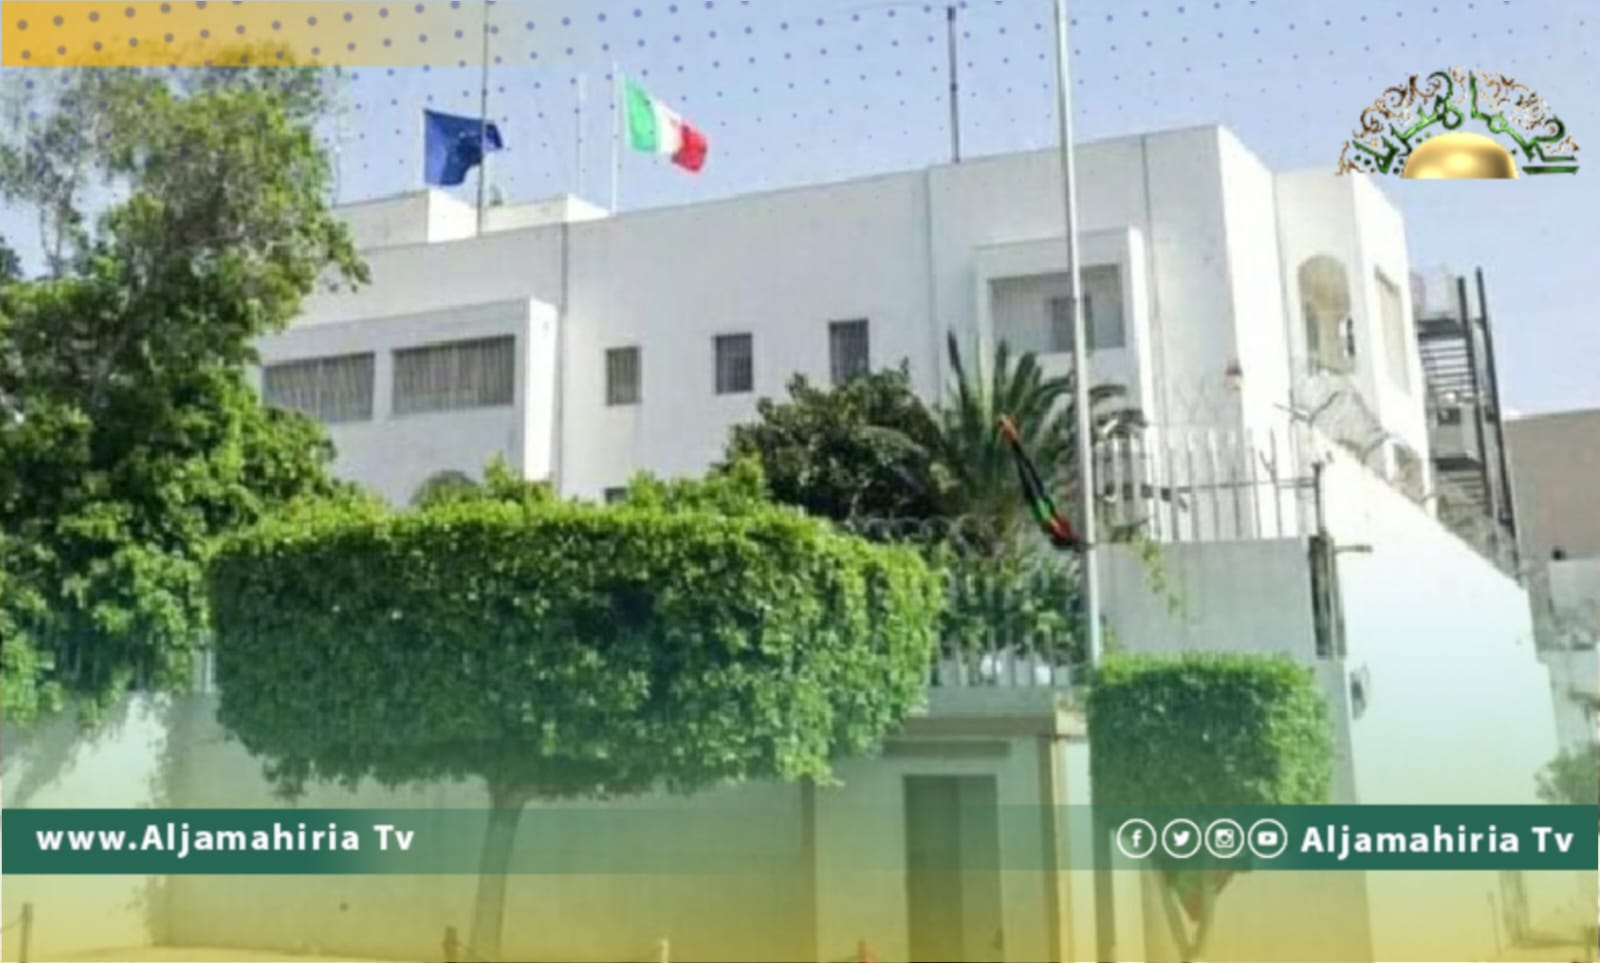 السفارة الإيطالية مهنئة الليبيين بالعيد: نتمنى زوال الانقسامات والأزمات في ليبيا